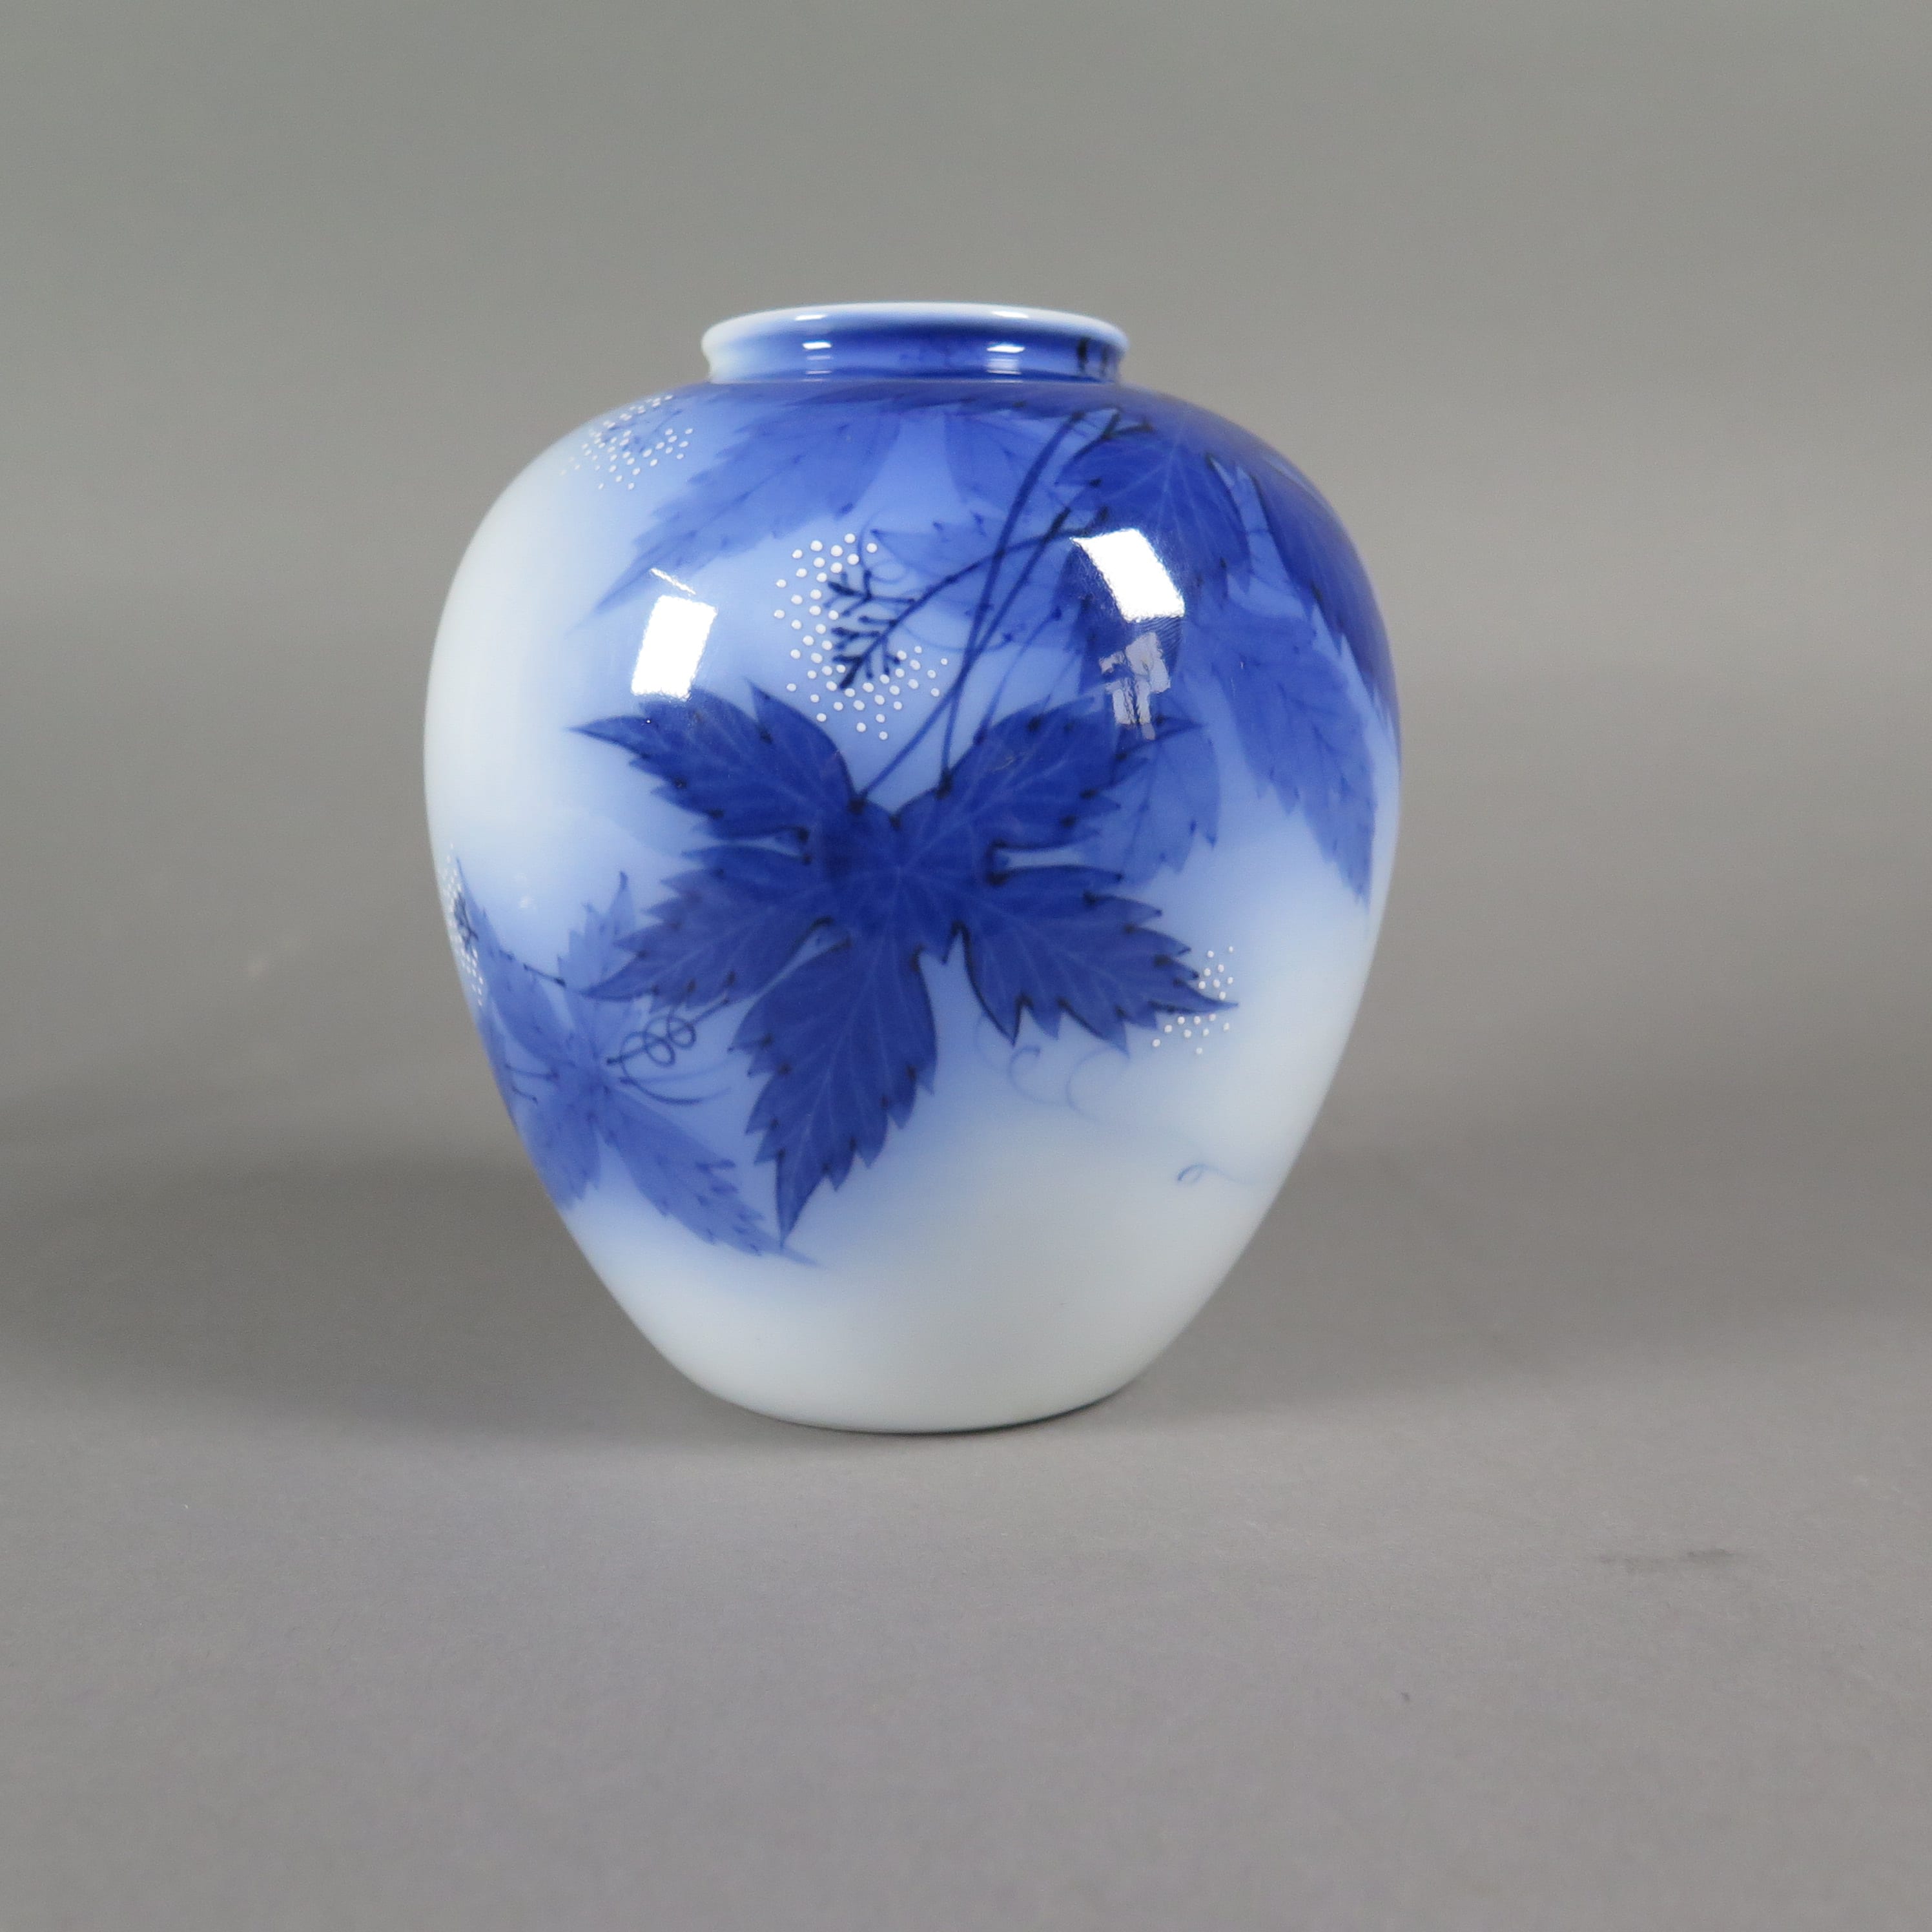 Lot 049: Koransha Japanese Porcelain Vase